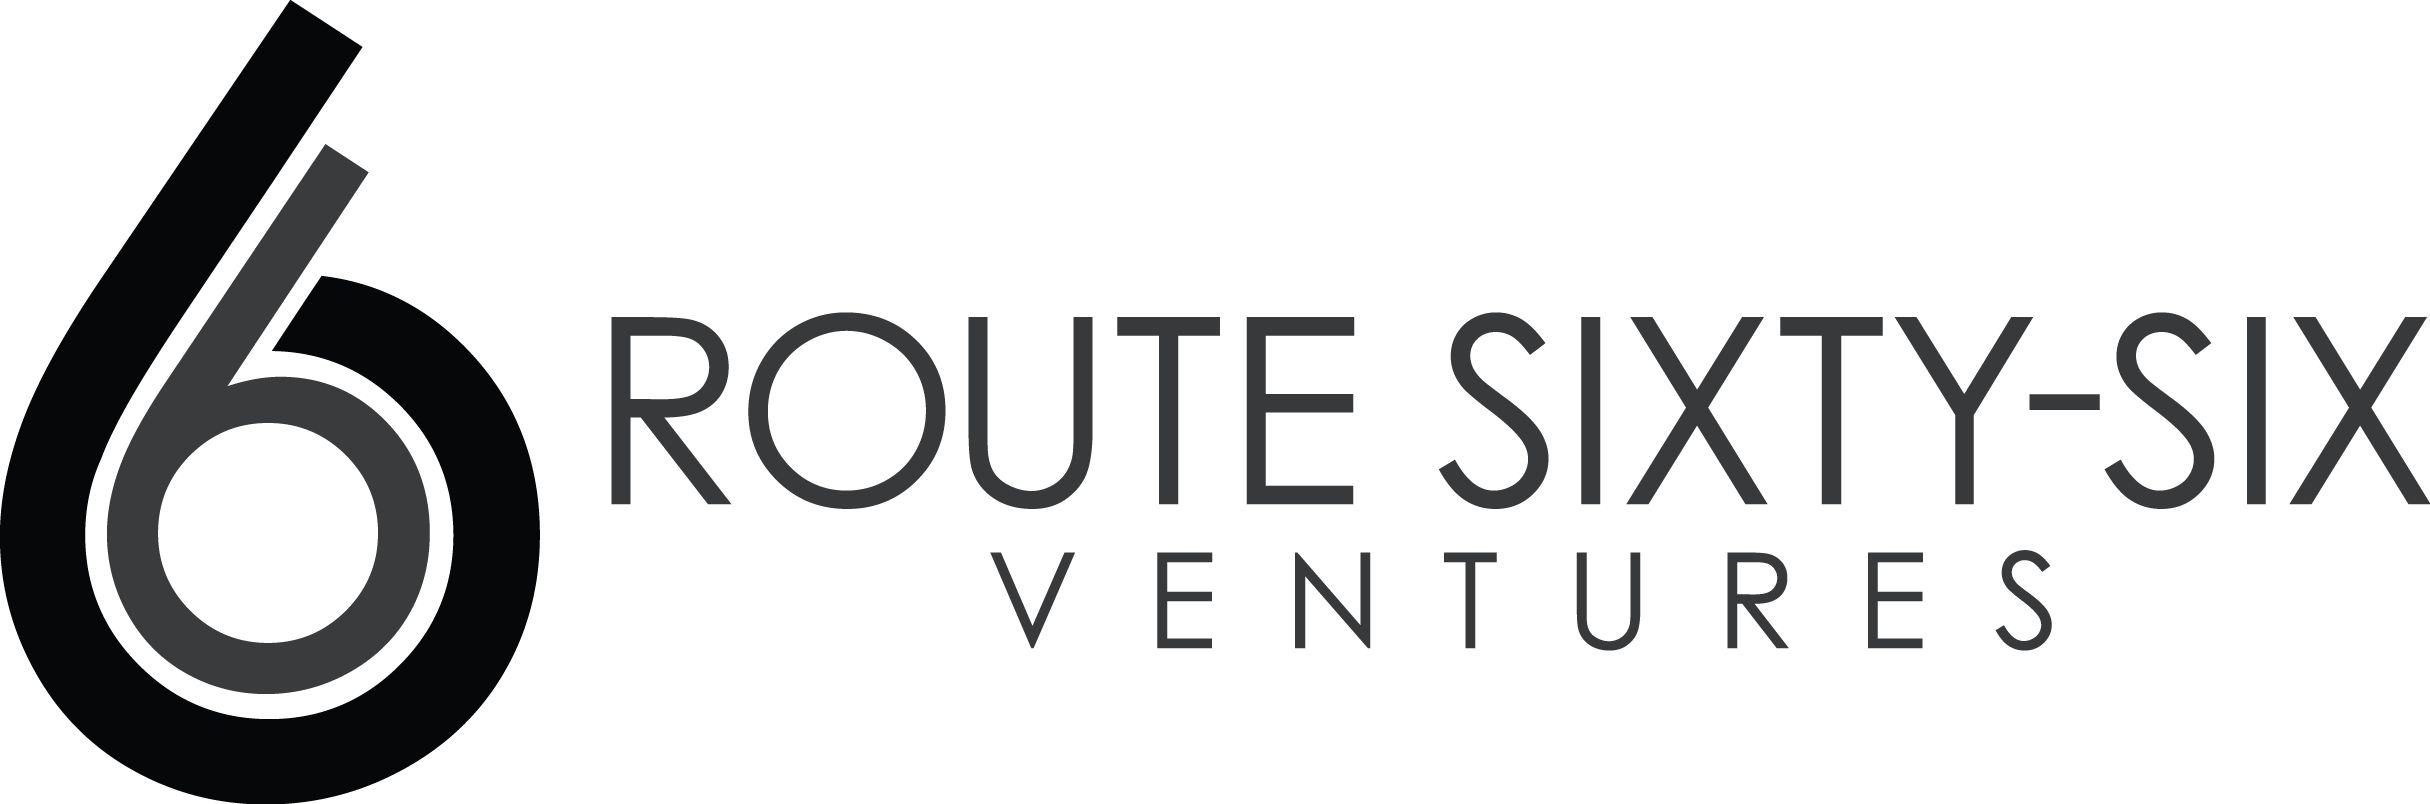 Route66ventures Logo